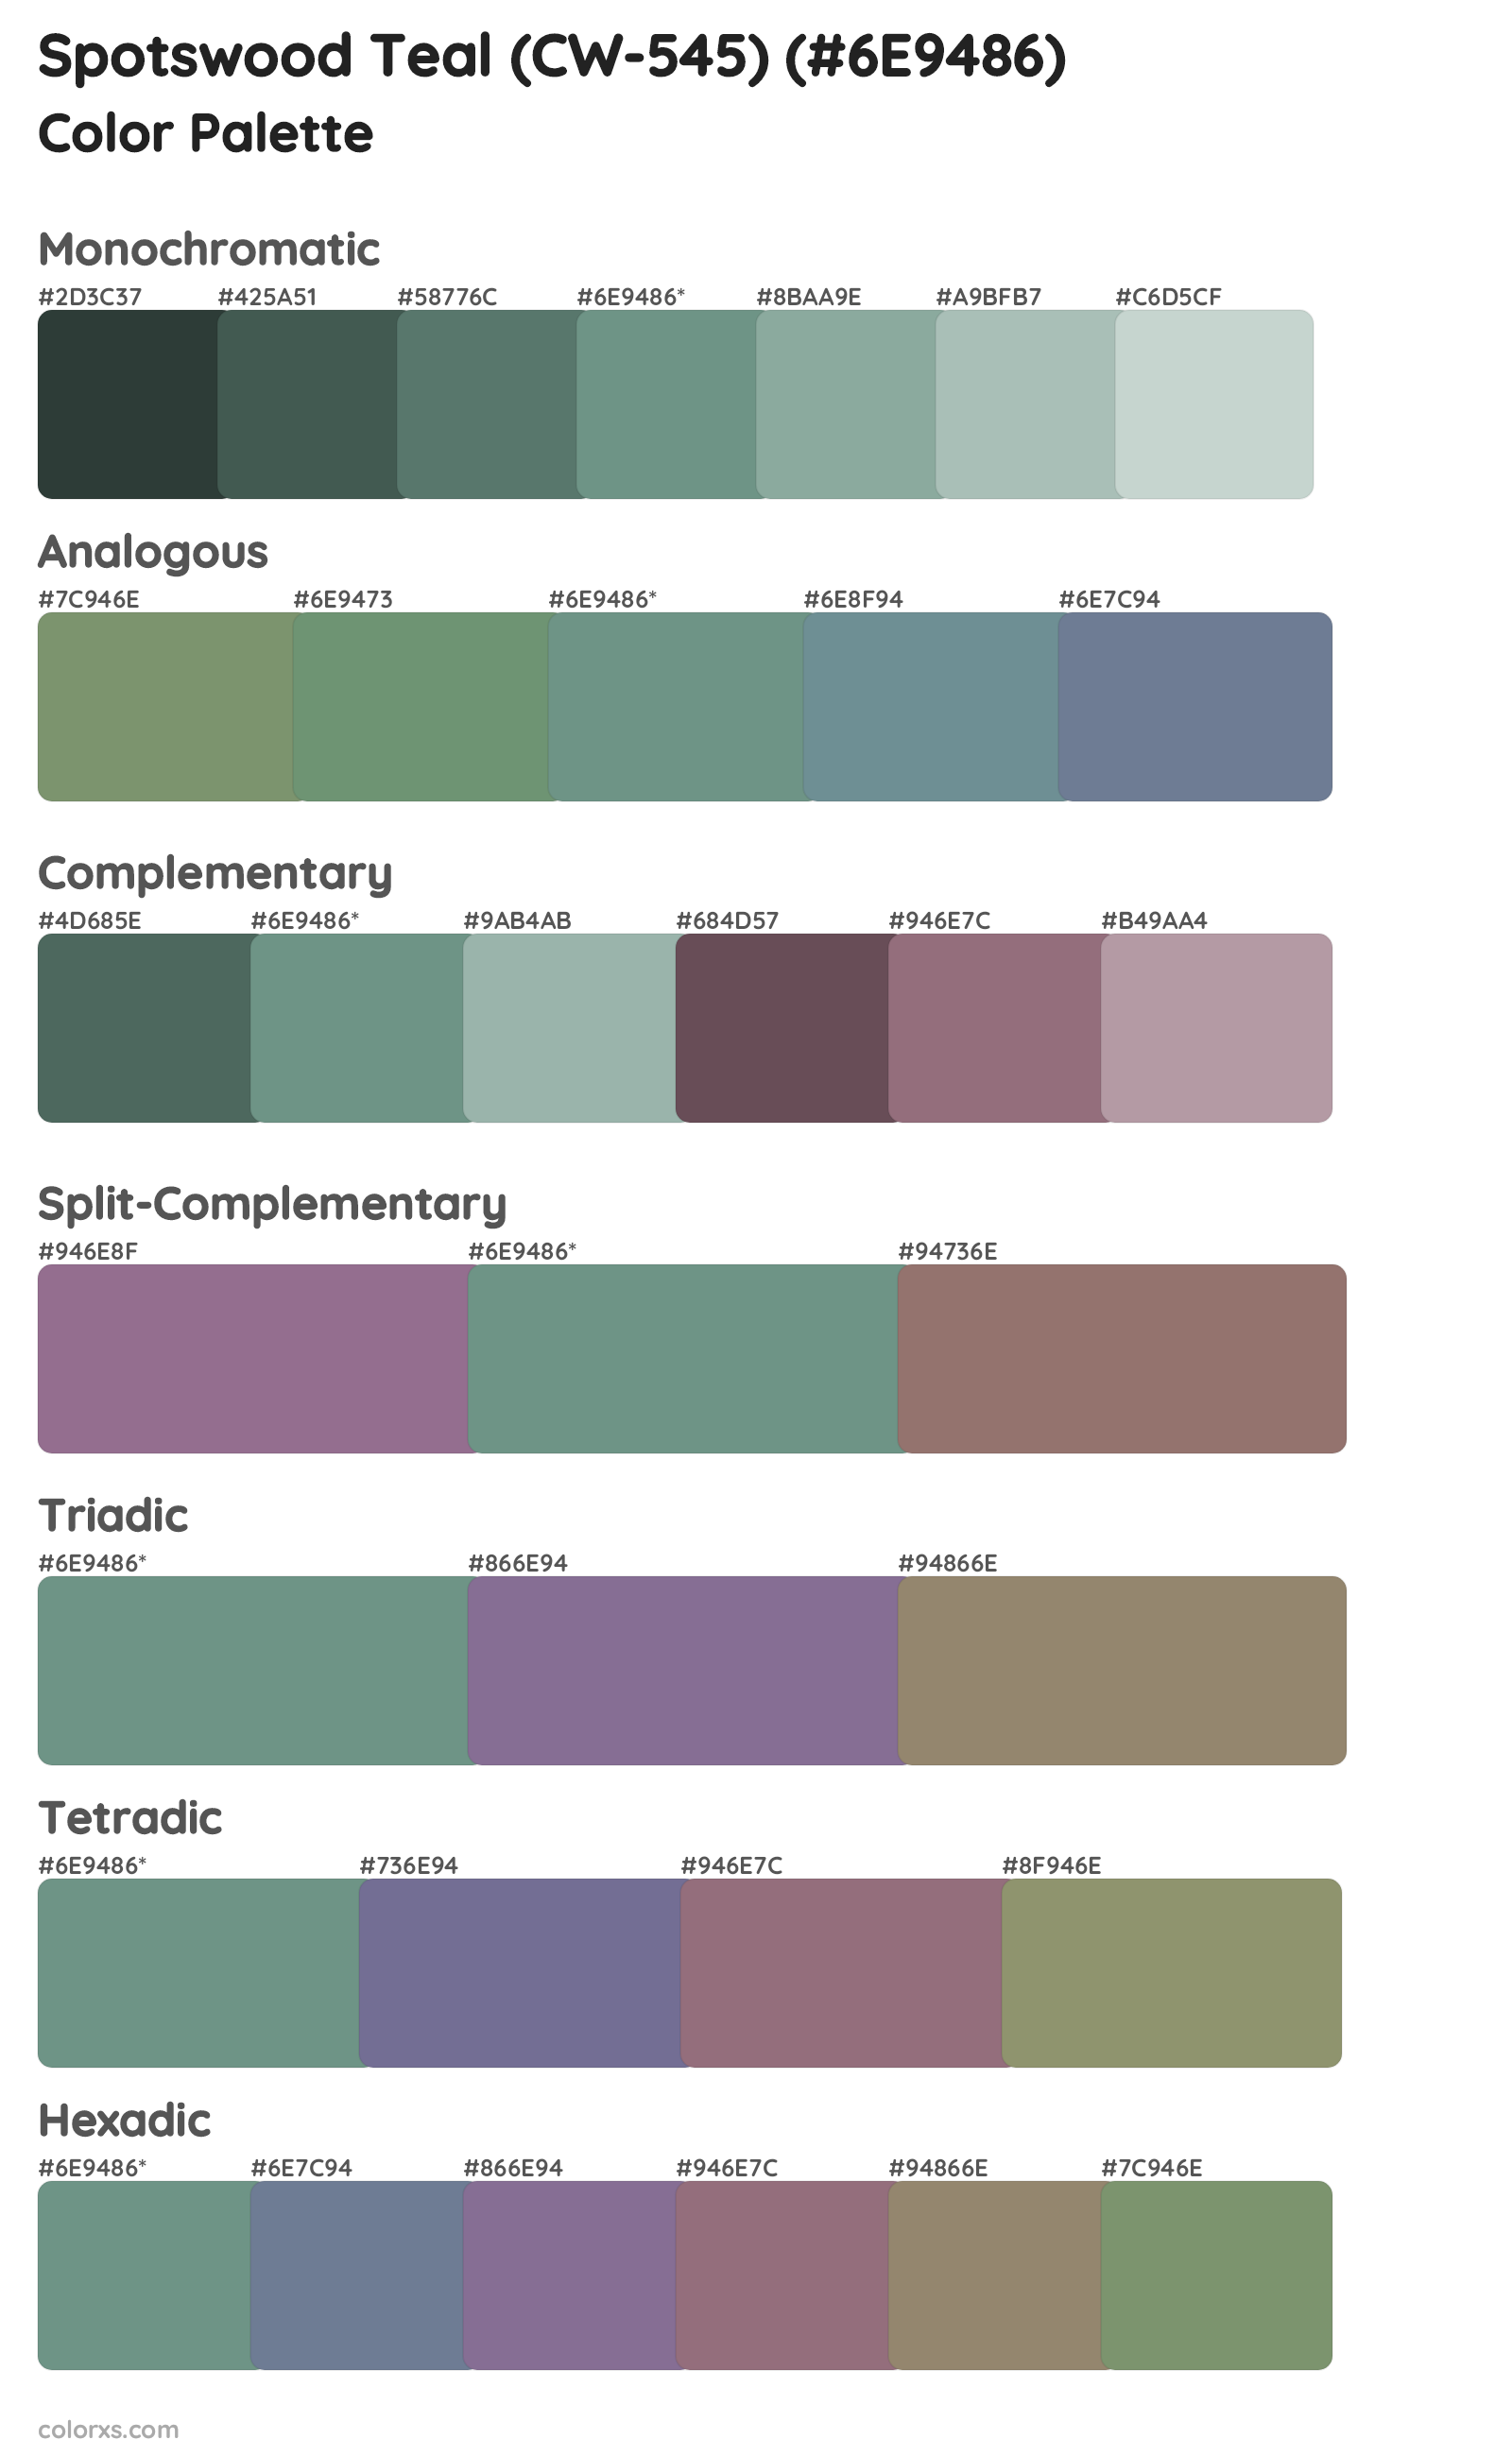 Spotswood Teal (CW-545) Color Scheme Palettes